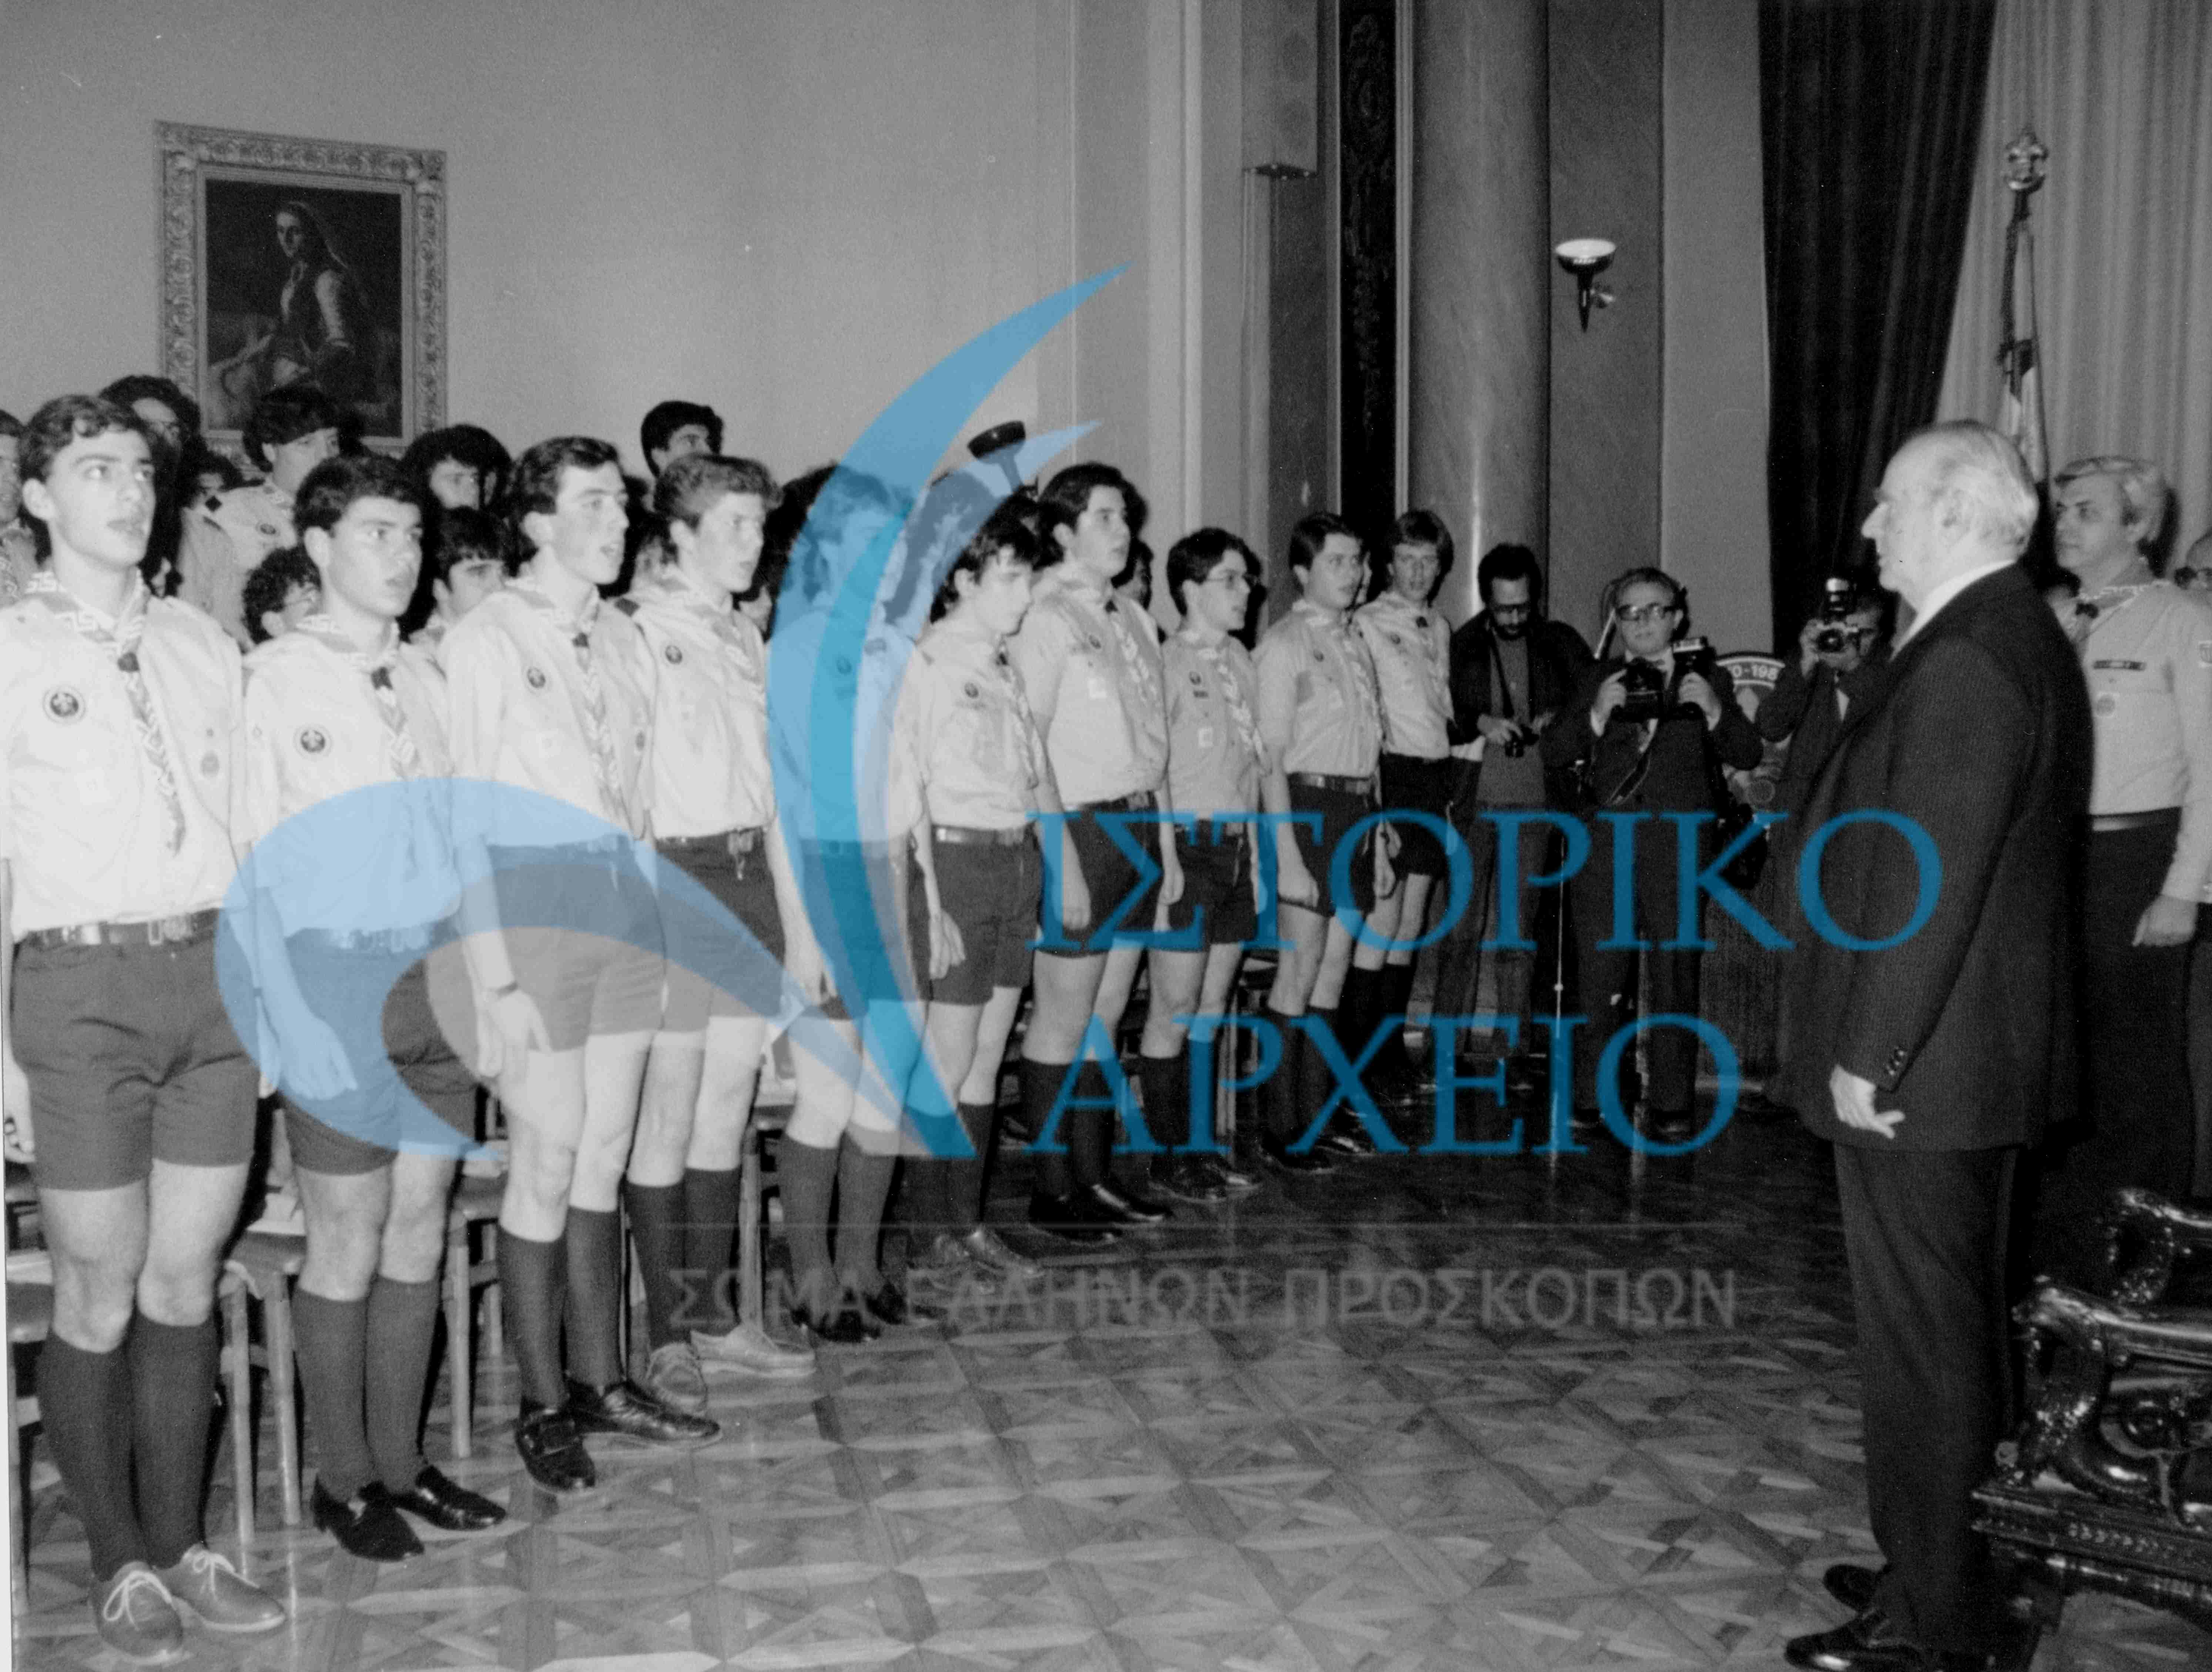 Οι Πρόσκοποι Έθνους μετά την επίδοση του μαντηλιού τους, τραγουδούν τον Εθνικό Ύμνο μπροστά από τον Πρόεδρο της Δημοκρατίας Κων. Καραμανλή το 1980.